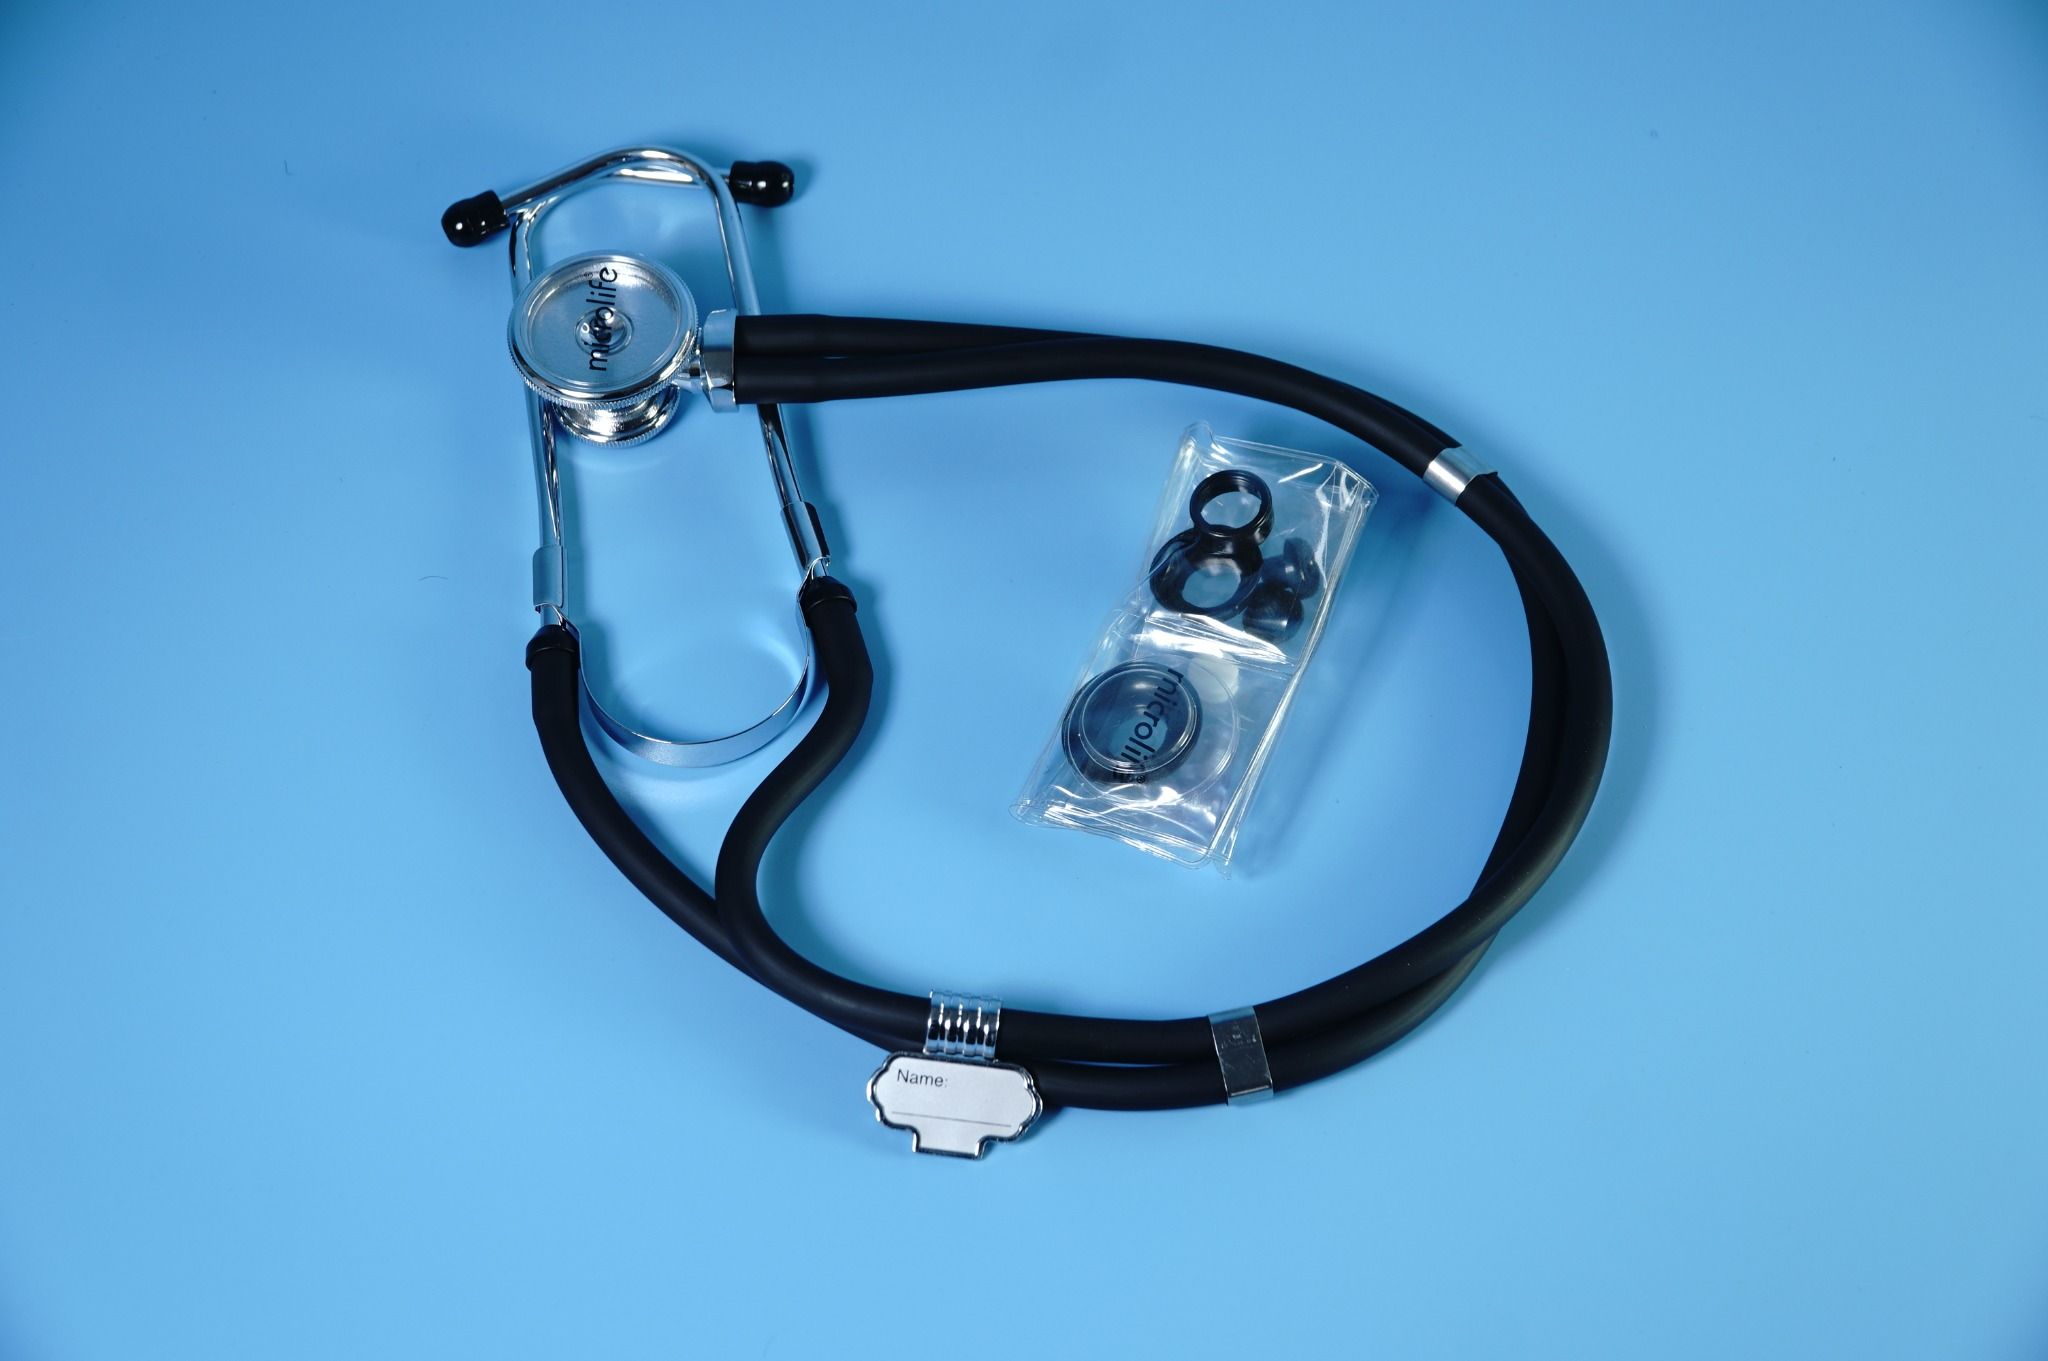  Ống nghe y tế 2 dây nghe nhịp tim Microlife ST-77 cho bác sĩ, y tá 